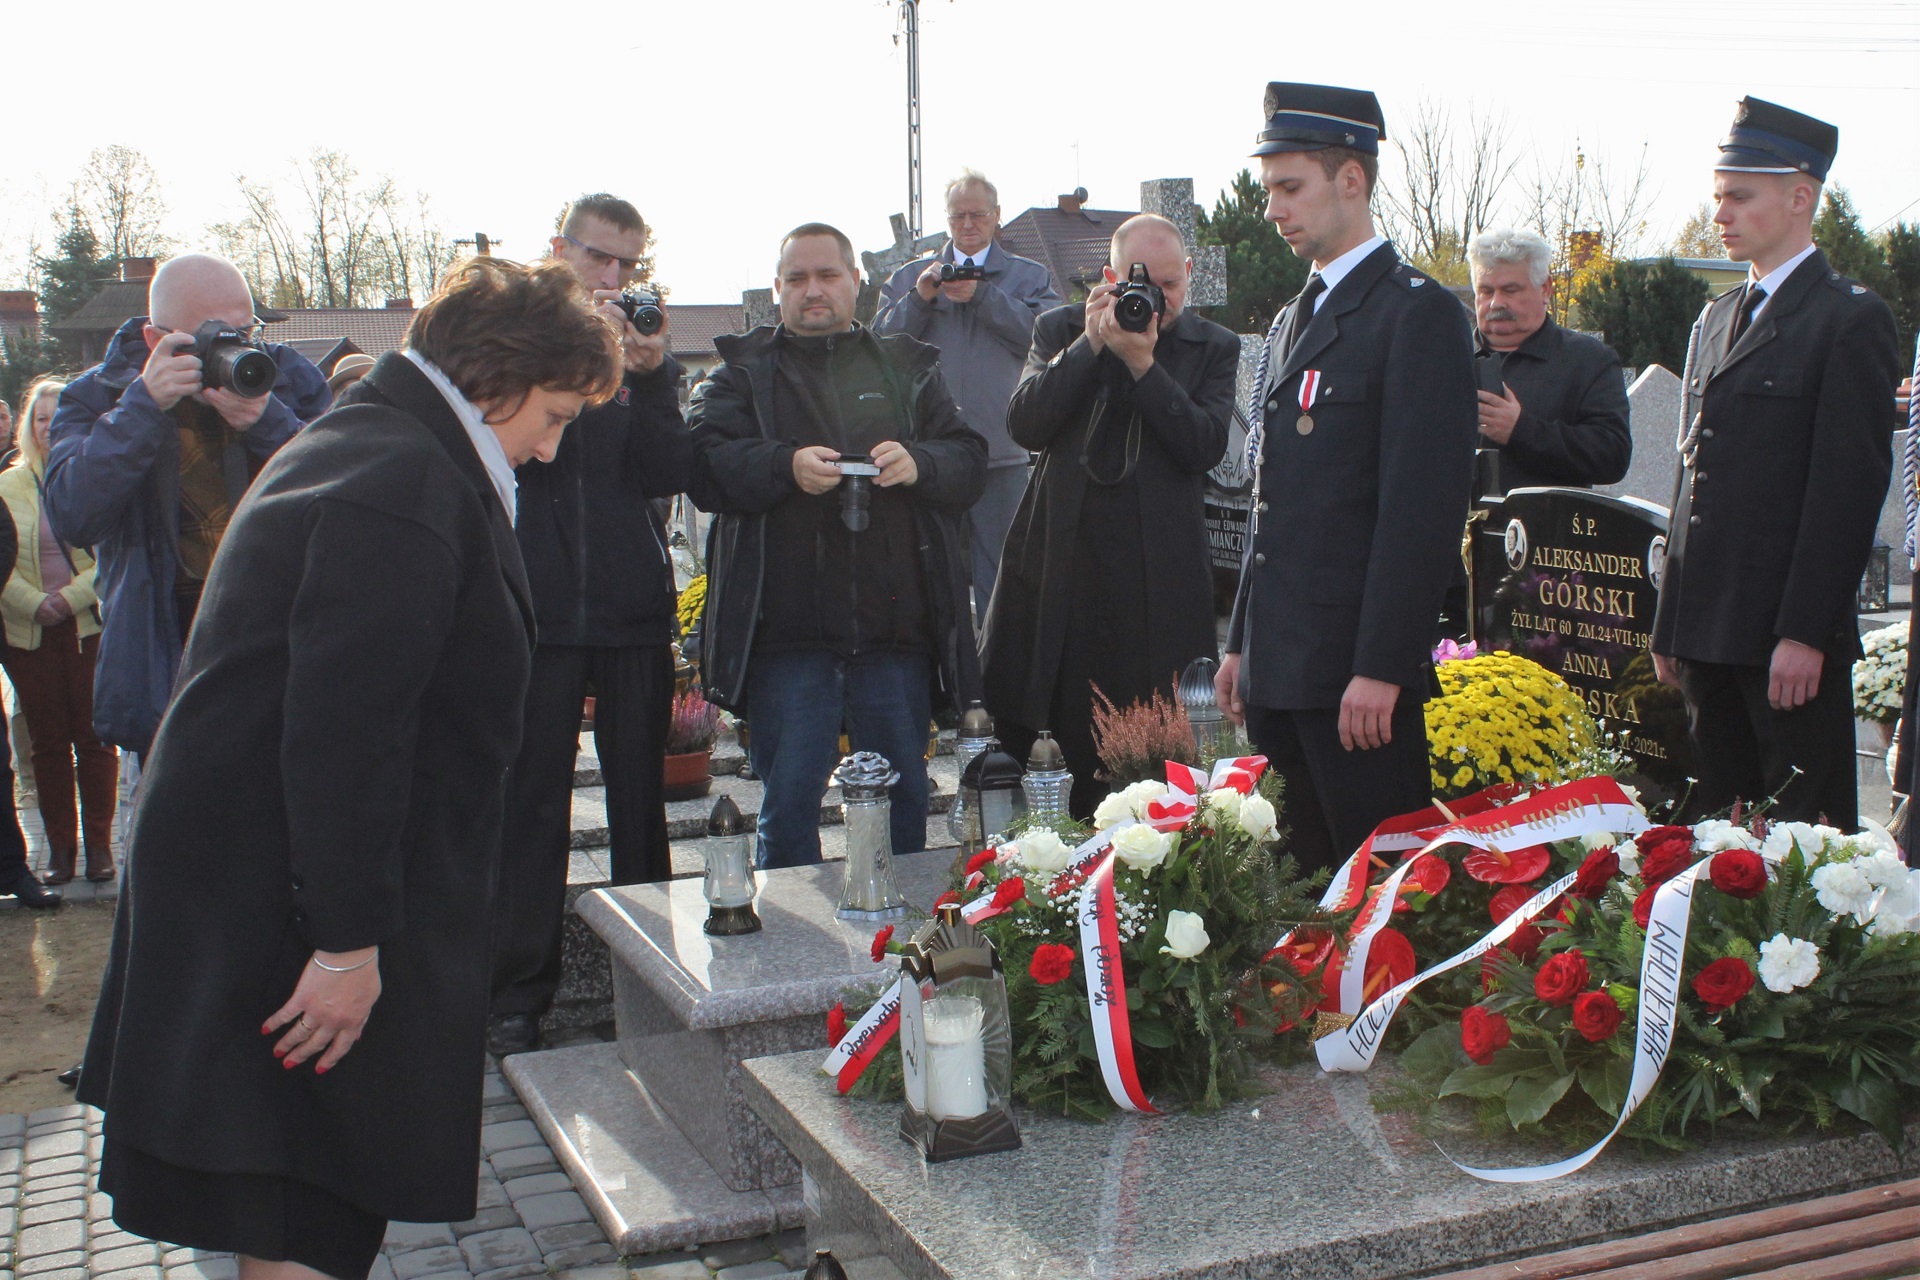 Moment złożenia przez starostę kwiatów na pomniku ks. Antoniego Łapaya. Starosta kłania się stojąc na baczność przed miejscem pochówku księdza. W tle fotoreporterzy oraz uczestnicy wydarzenia.